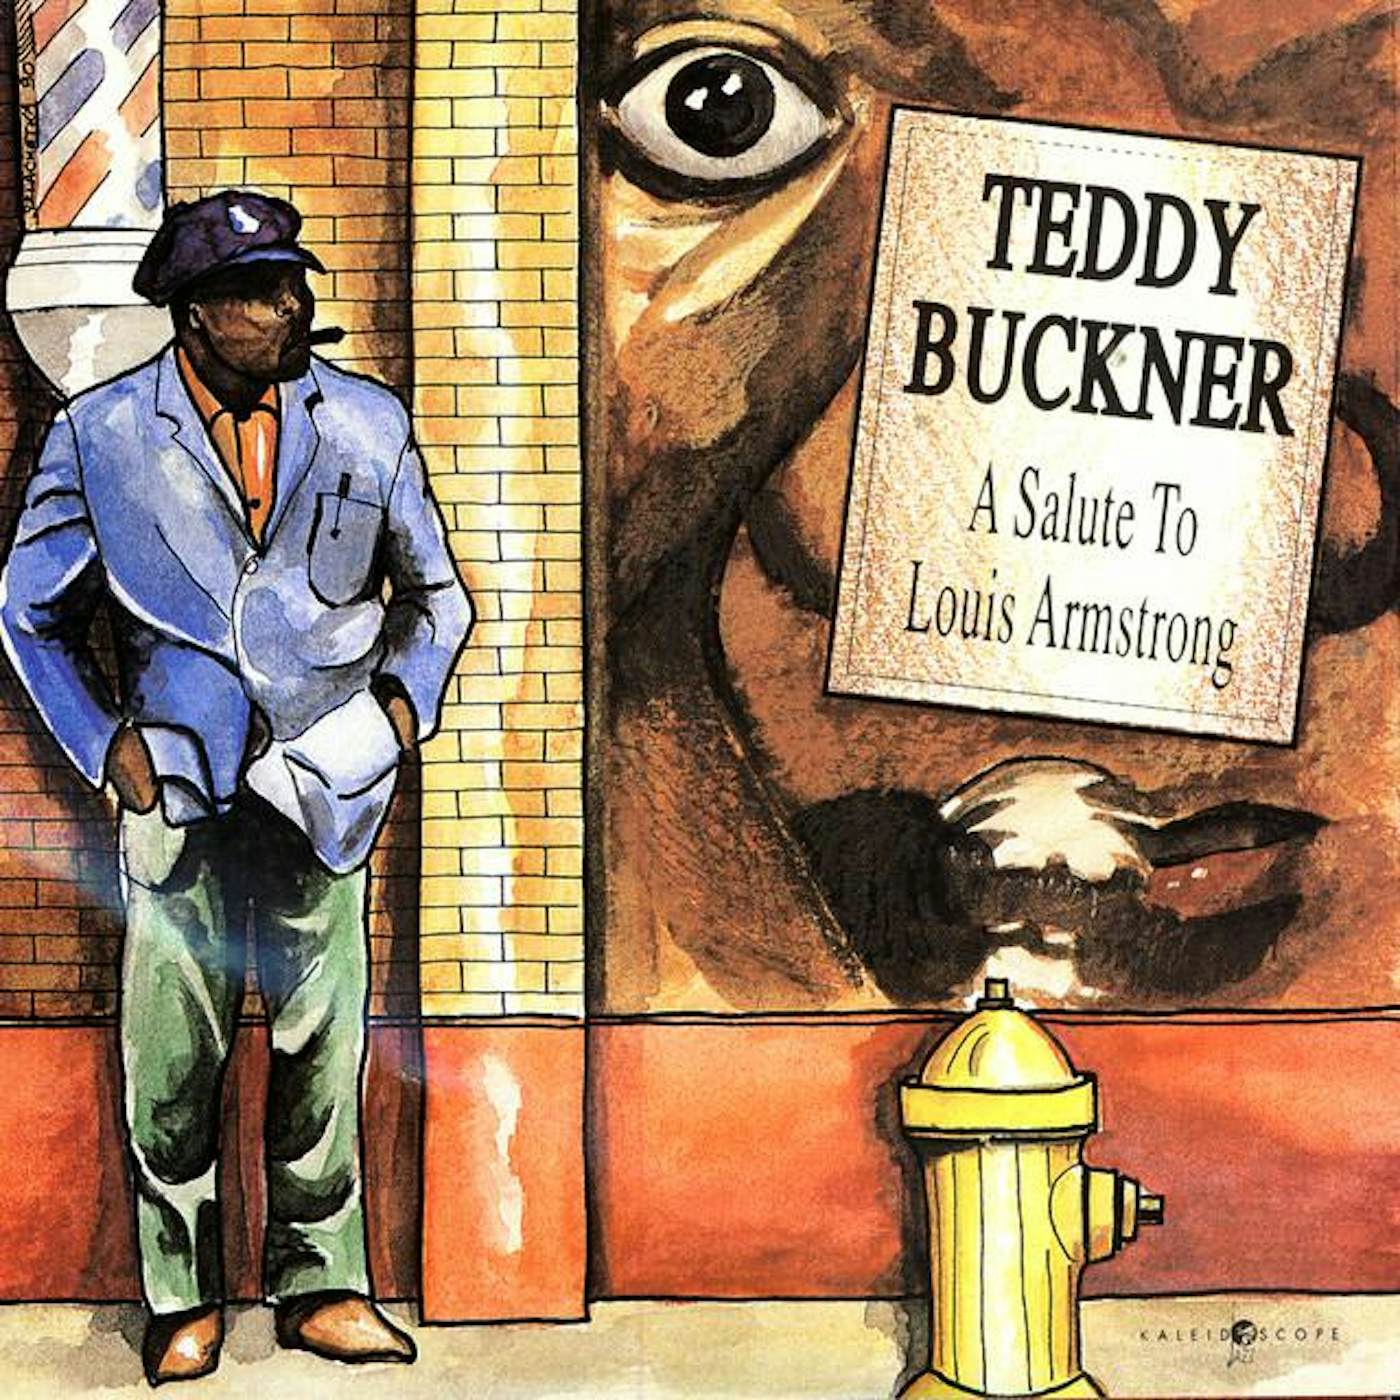 Teddy Buckner